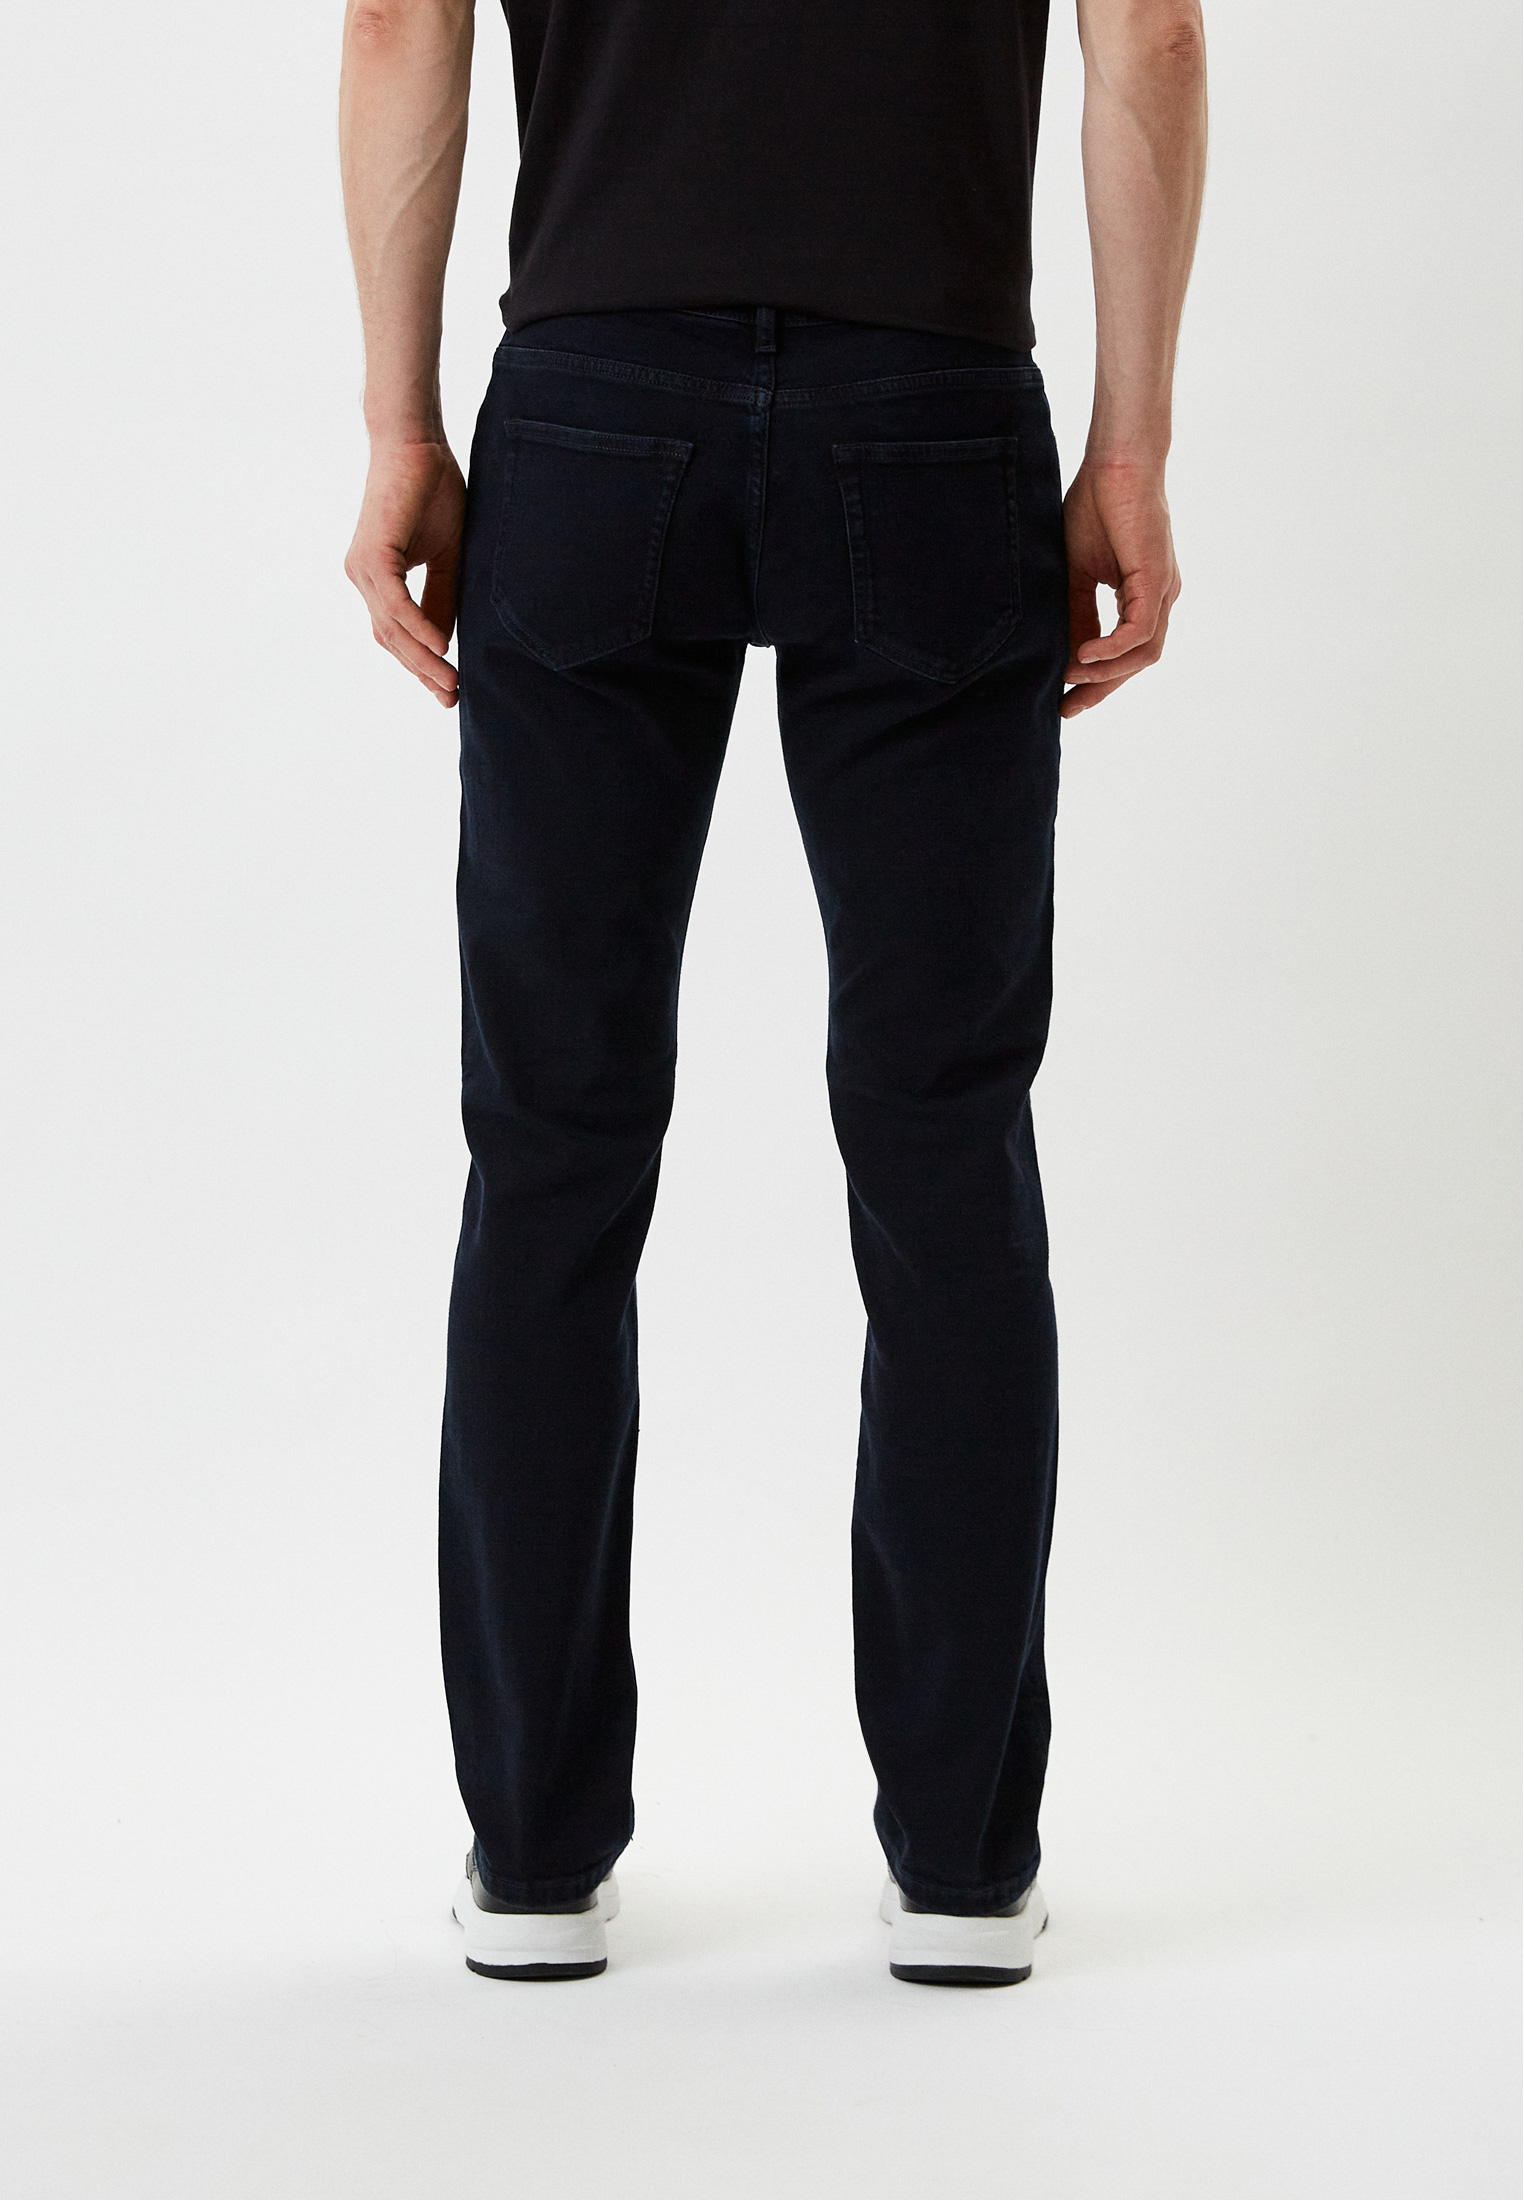 Мужские зауженные джинсы Karl Lagerfeld (Карл Лагерфельд) 521830-265840: изображение 3